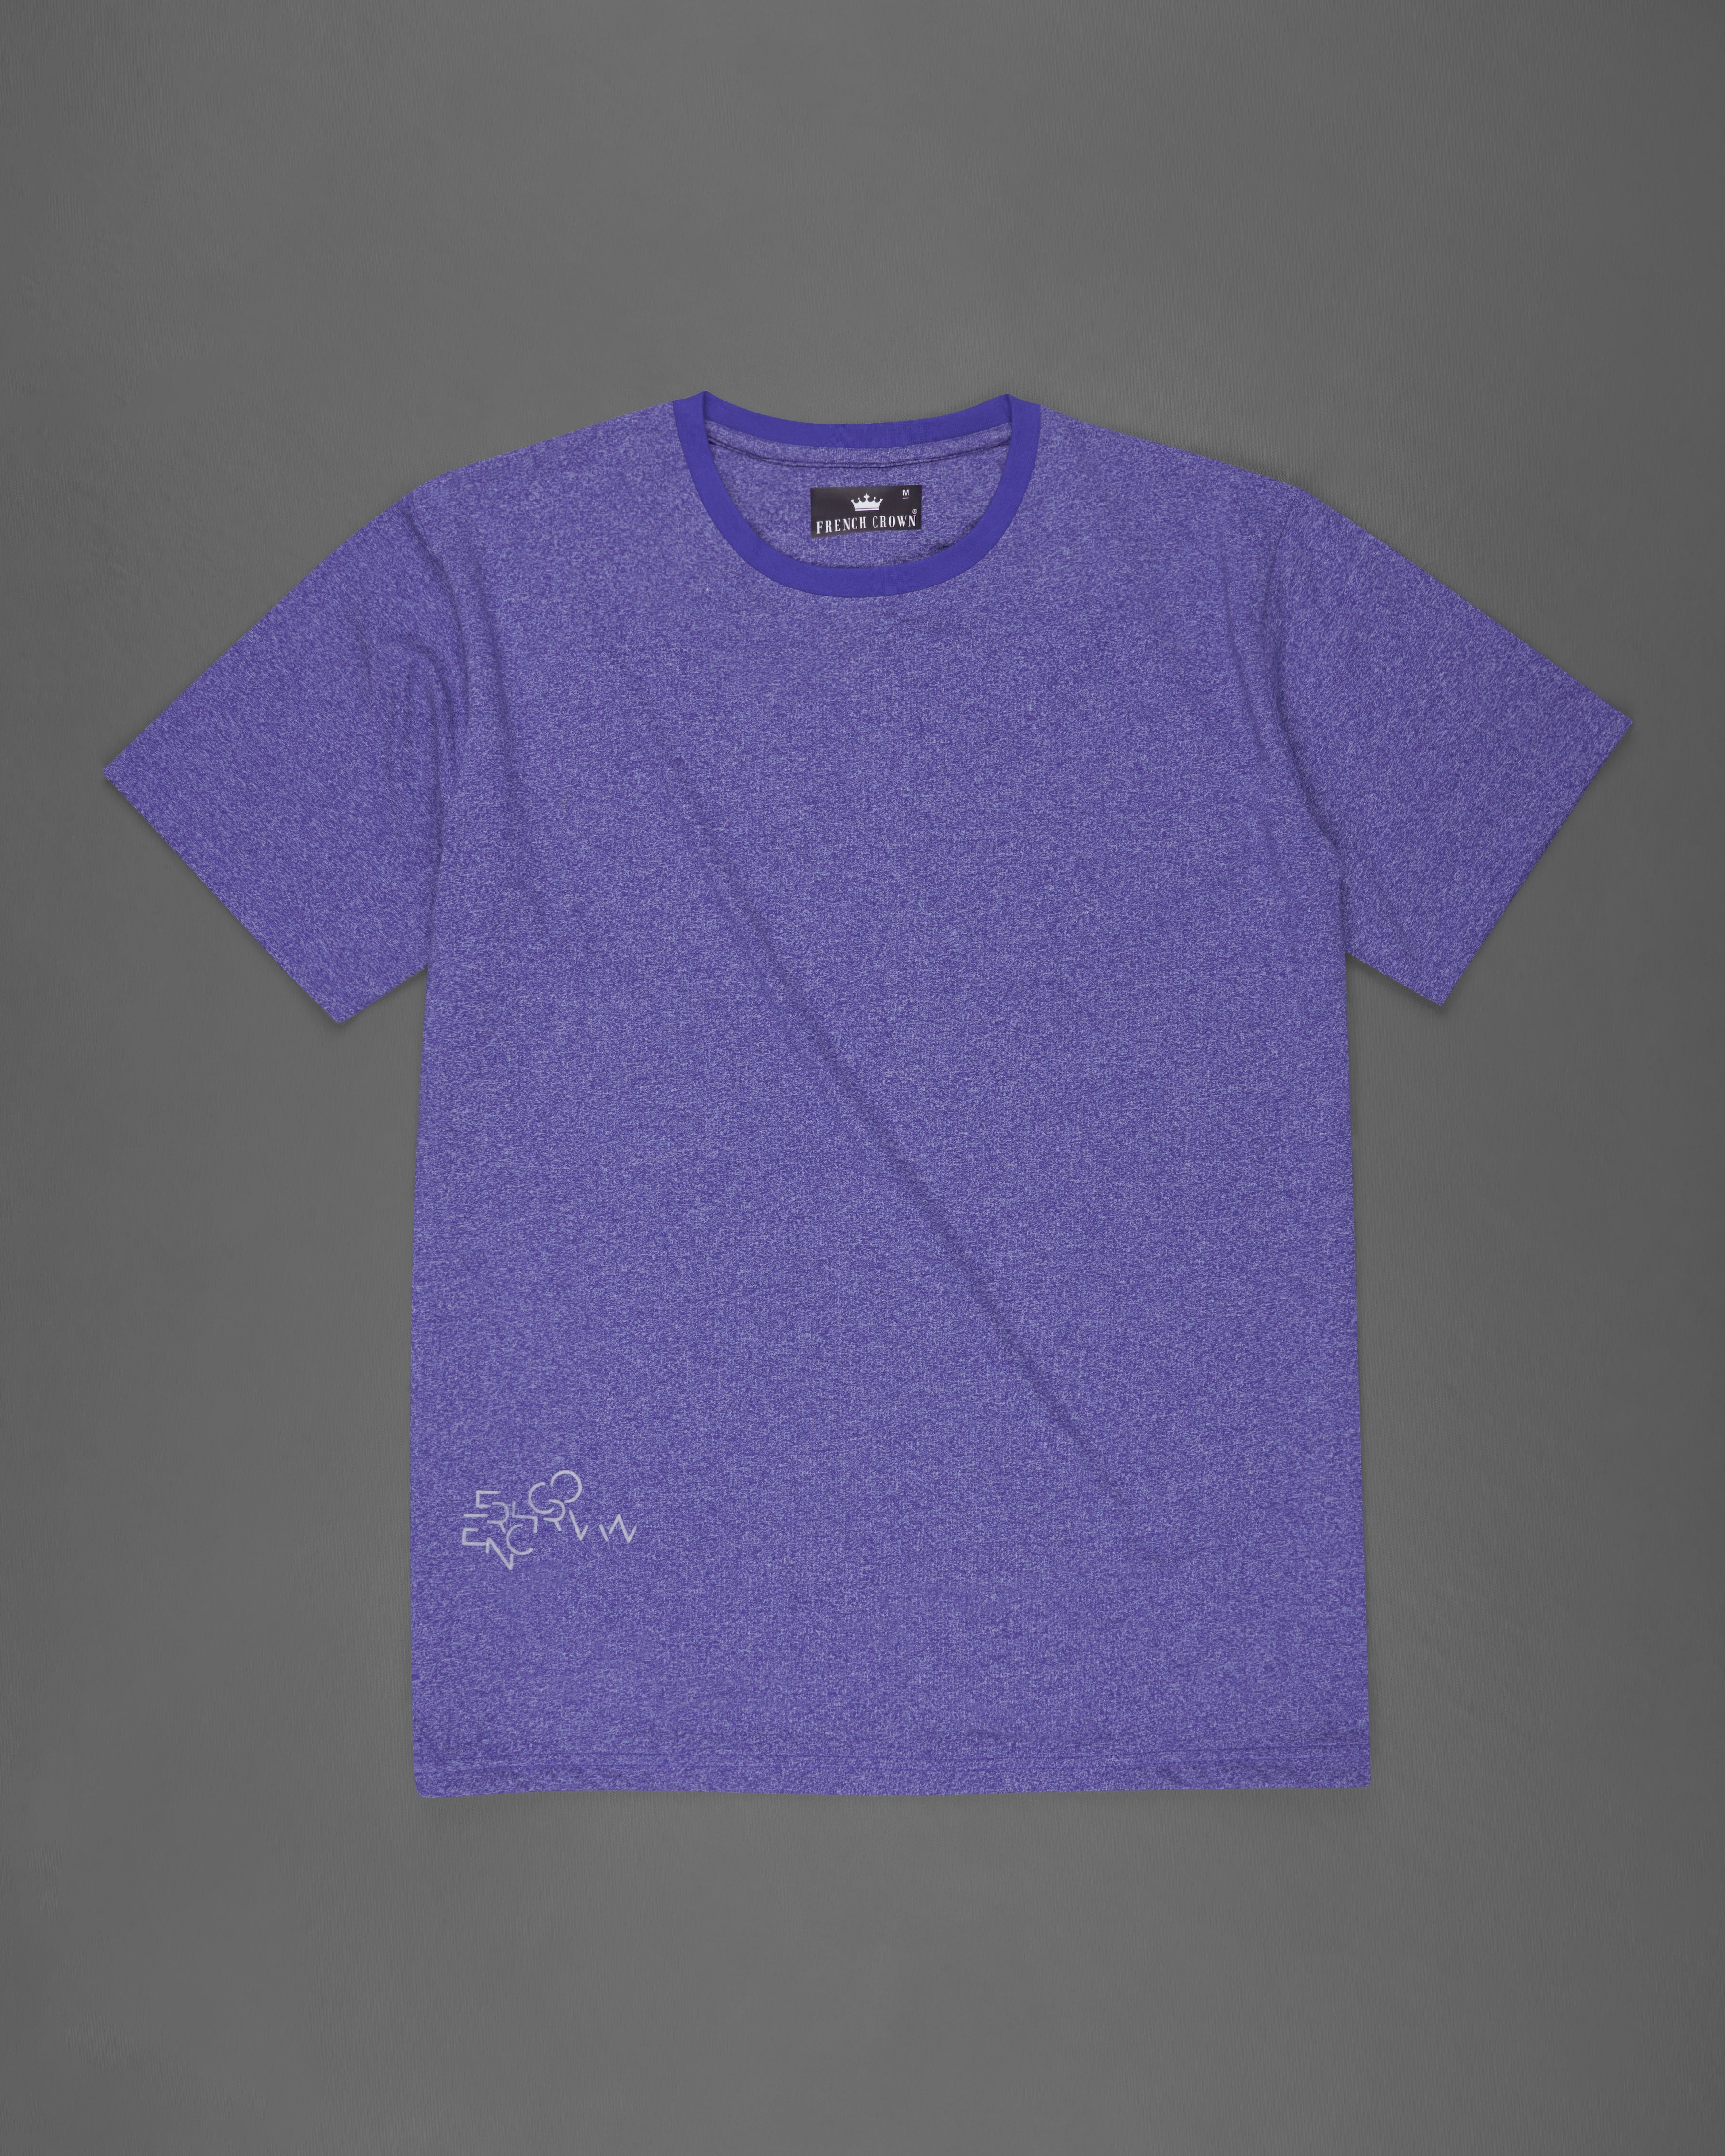 Twilight Blue Premium Cotton T-shirt TS651-S, TS651-M, TS651-L, TS651-XL, TS651-XXL